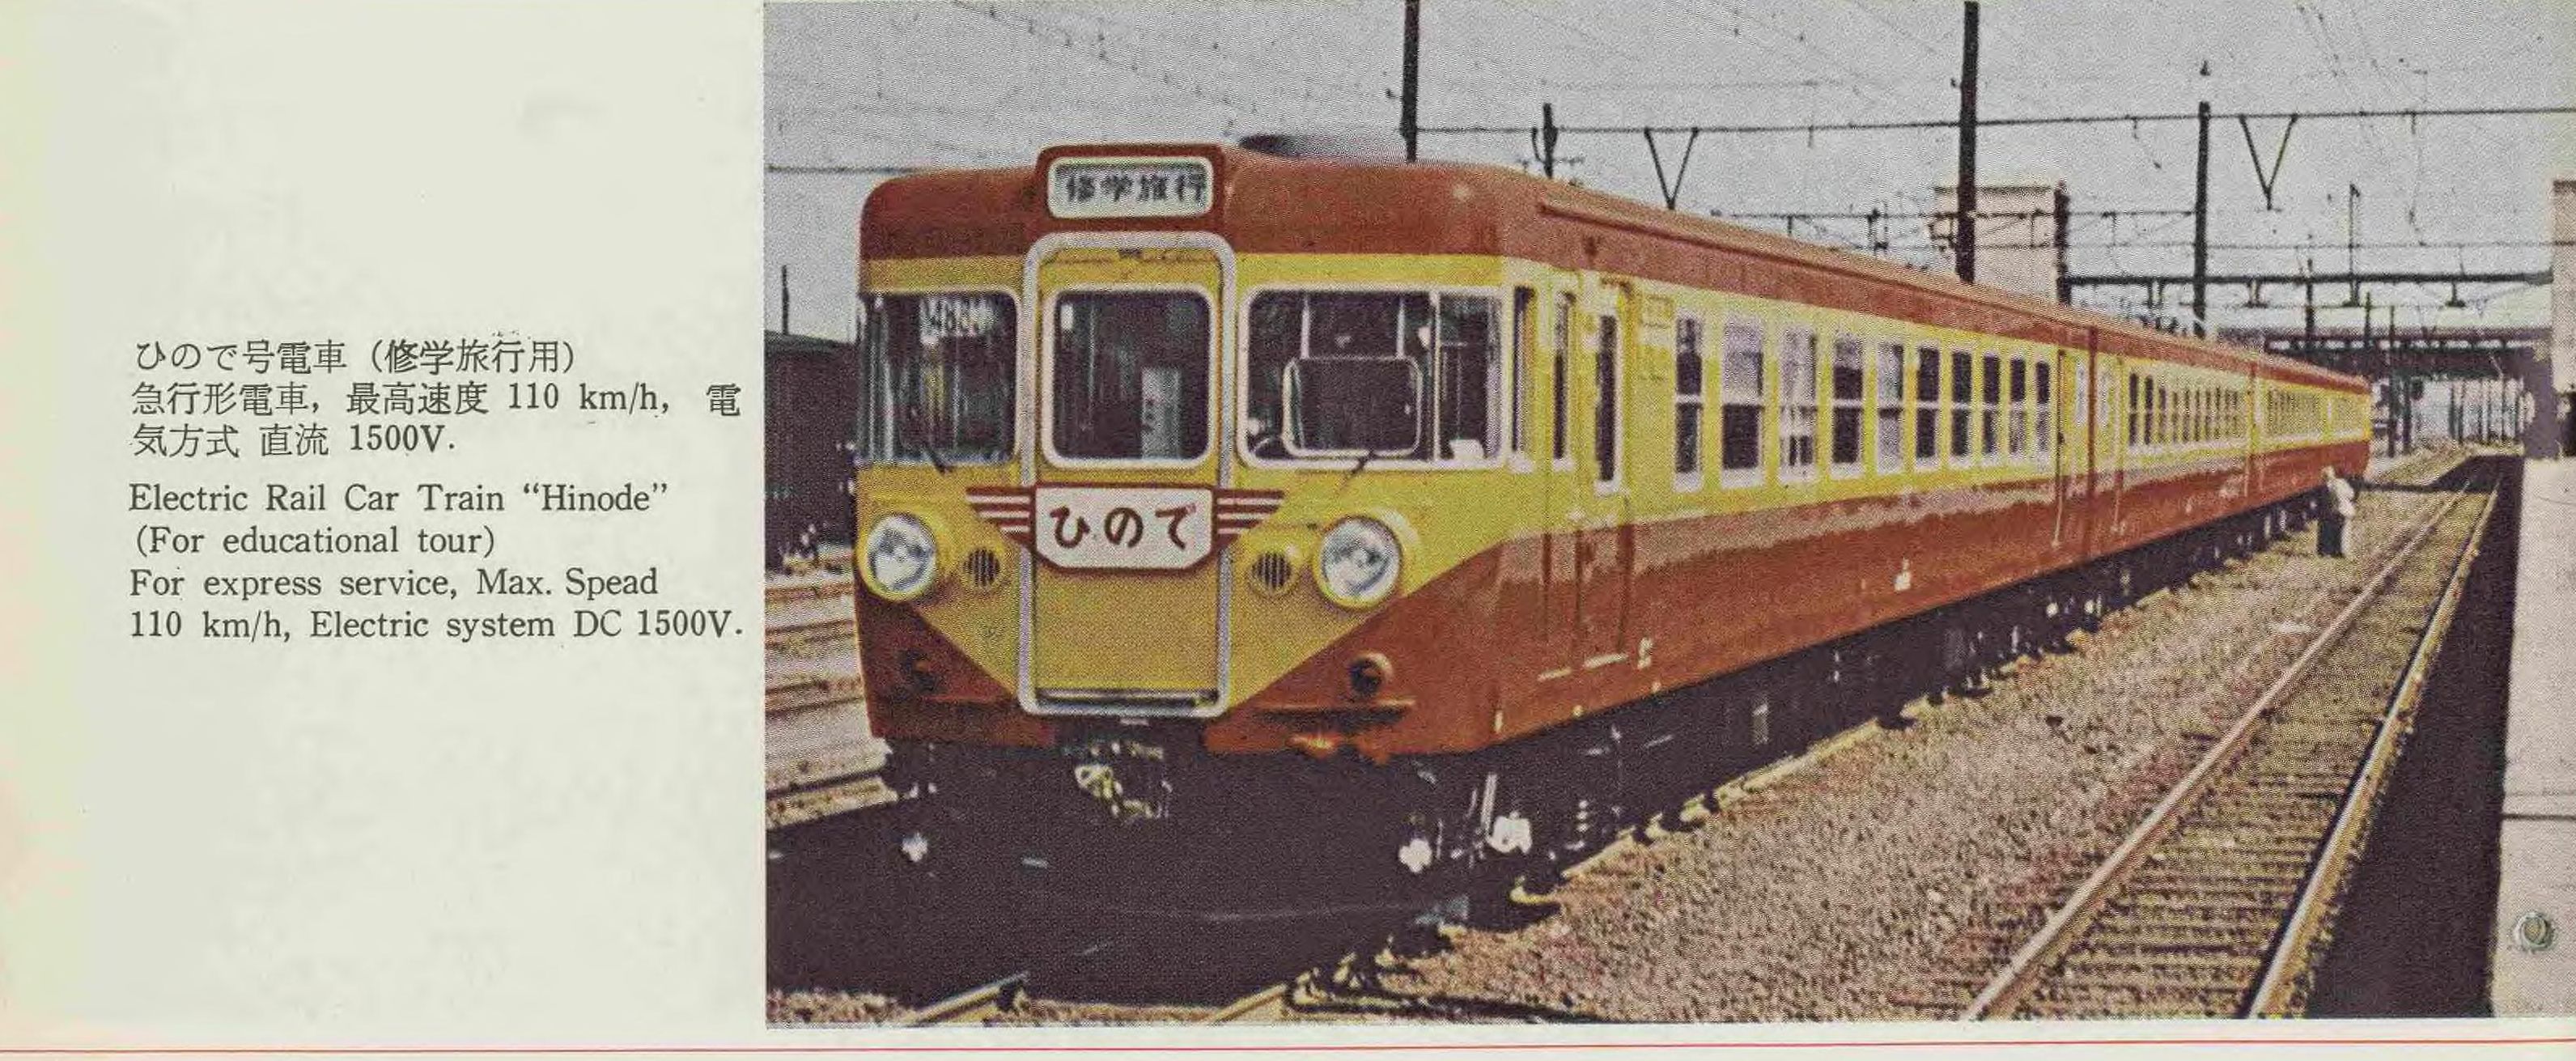 最近の日本の鉄道車両